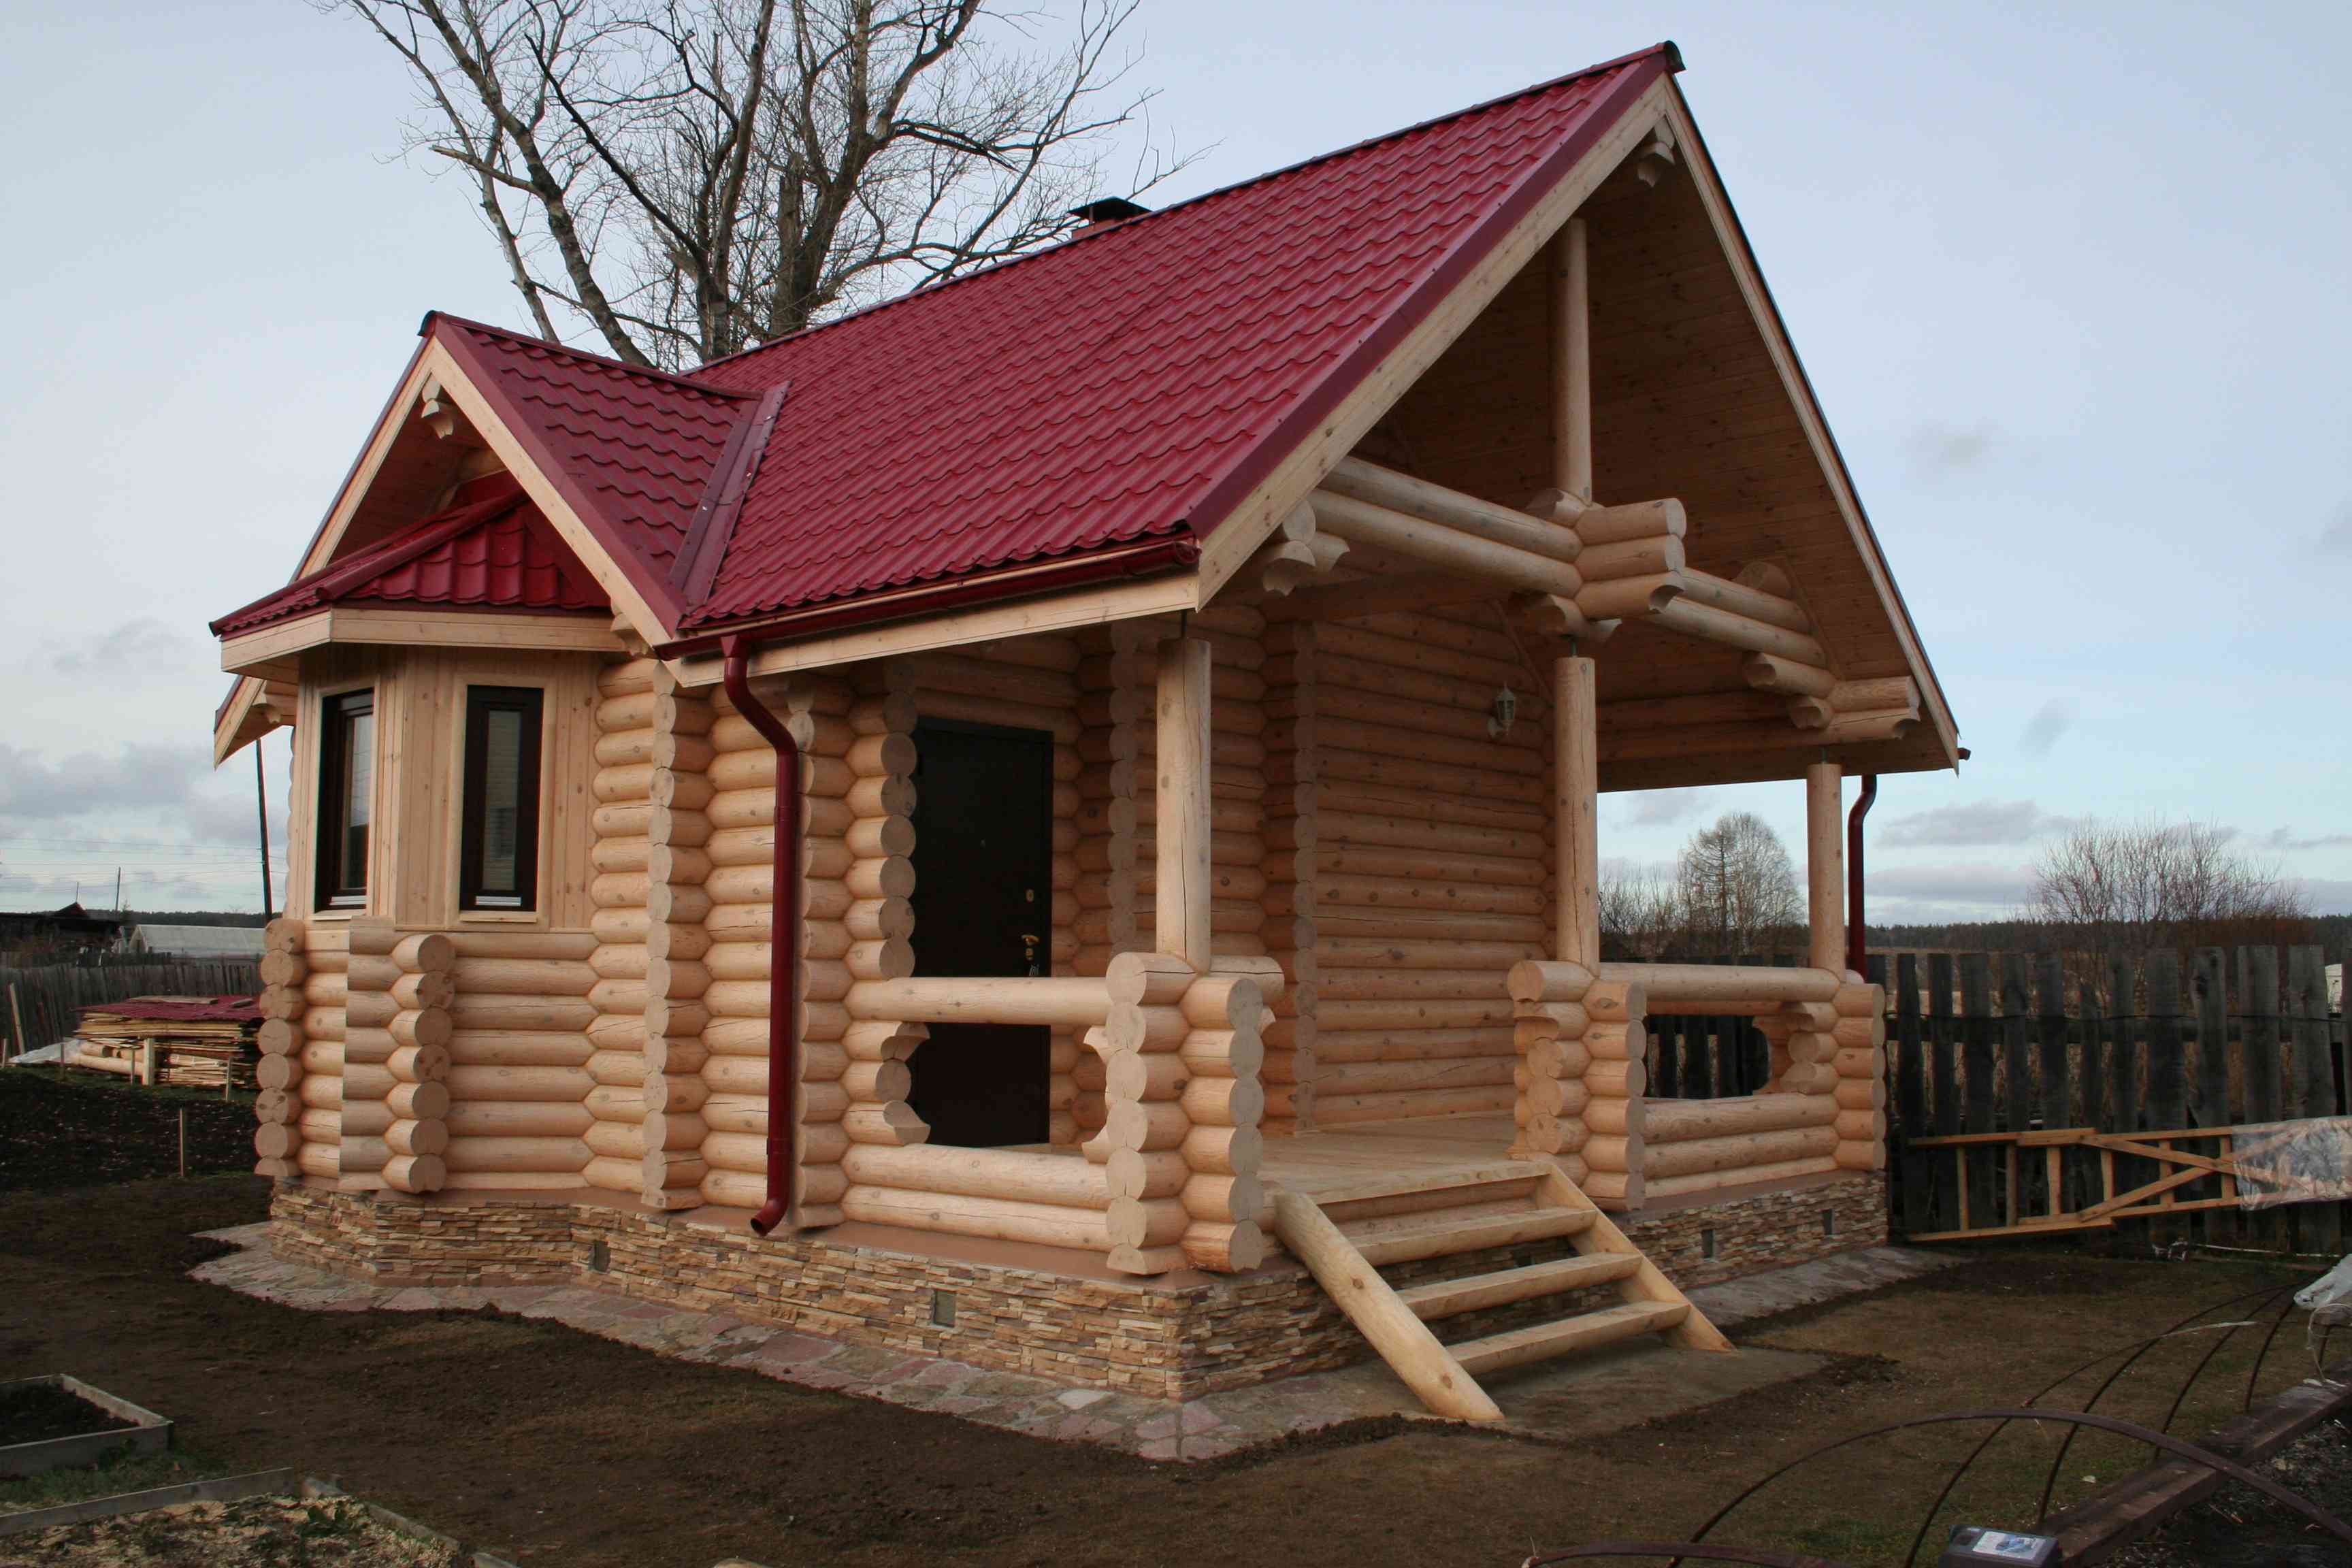 Дом под ключ в новосибирске цена построить